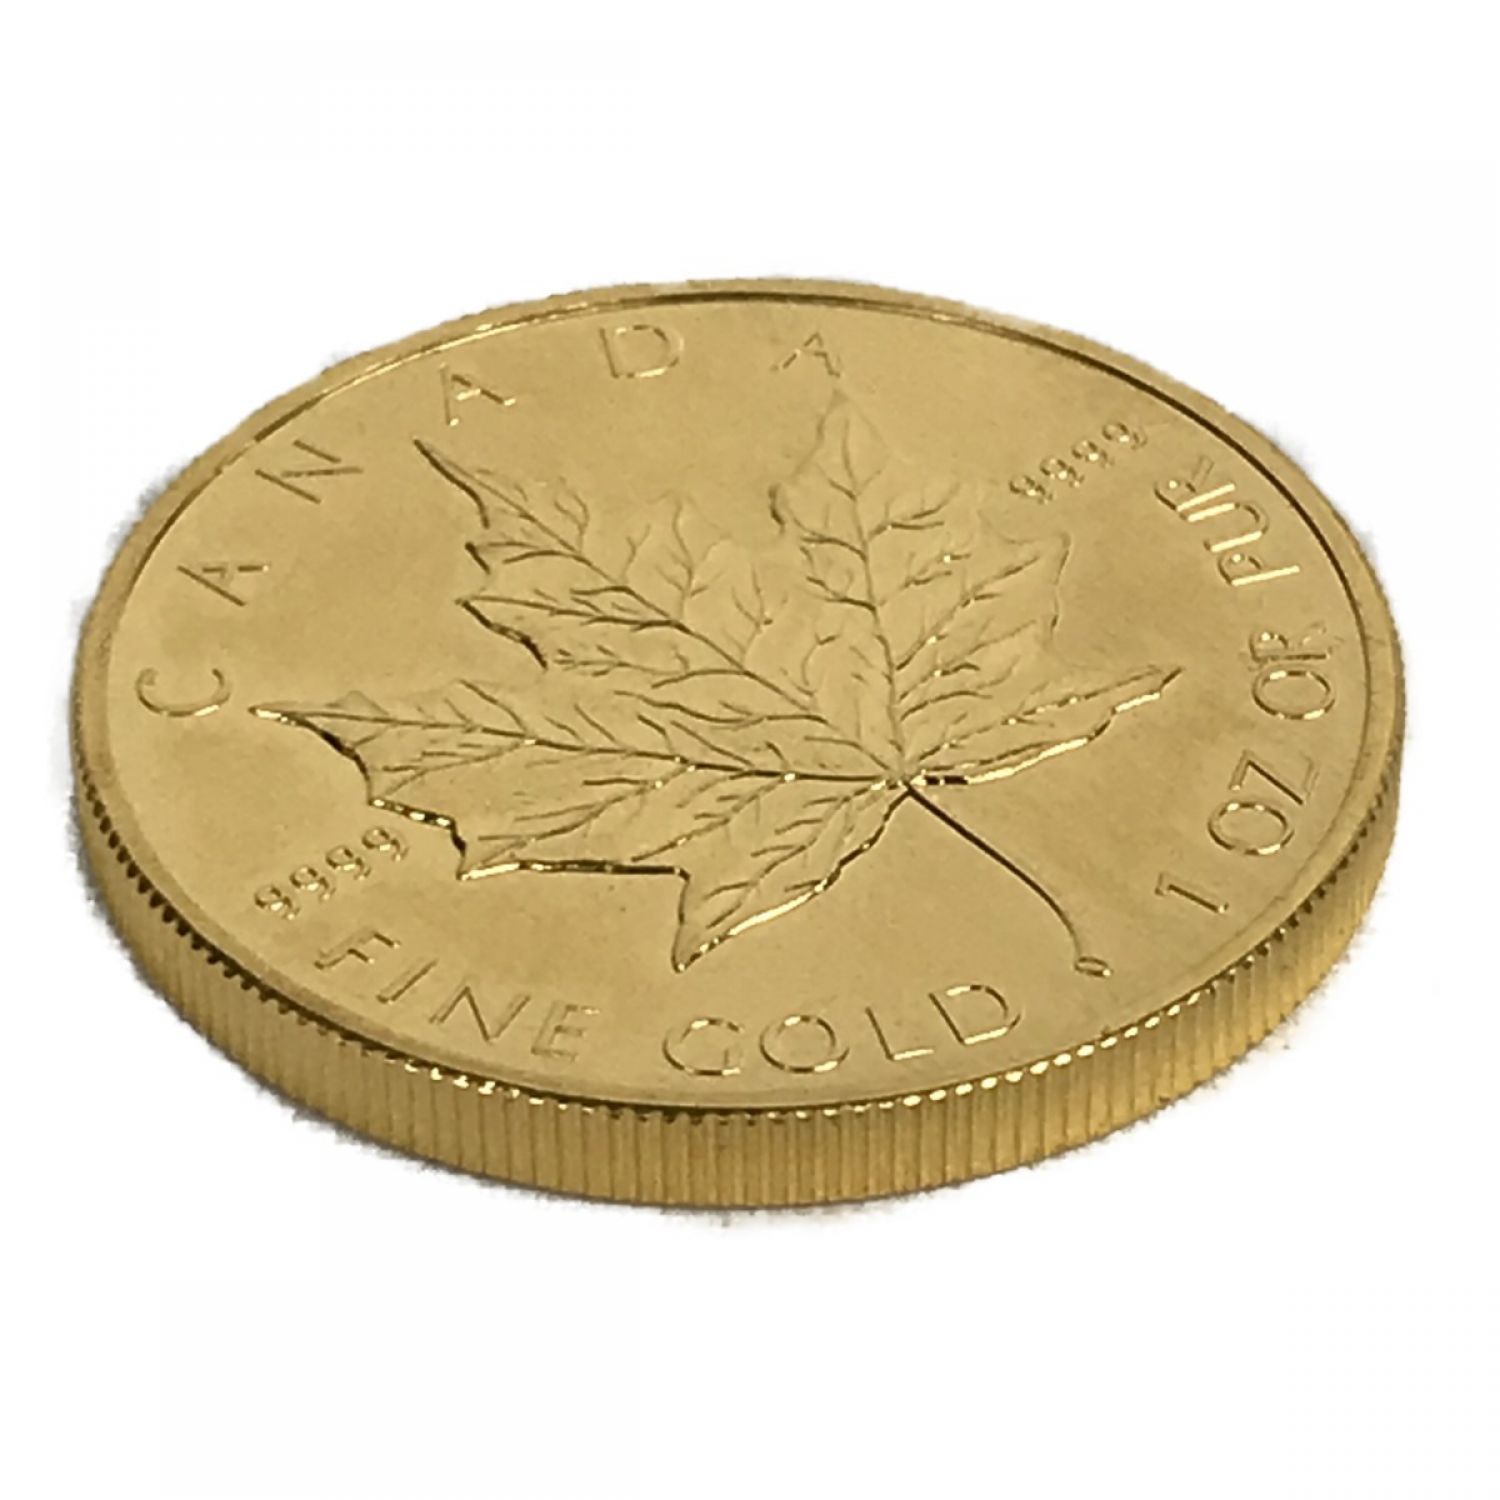 1988年 カナダ メイプルリーフ金貨 1/10oz 純金 K24 24金 5ドル金貨 FINE GOLD エリザベス女王2世 総量3.1g コイン  貨幣 ② - 貨幣